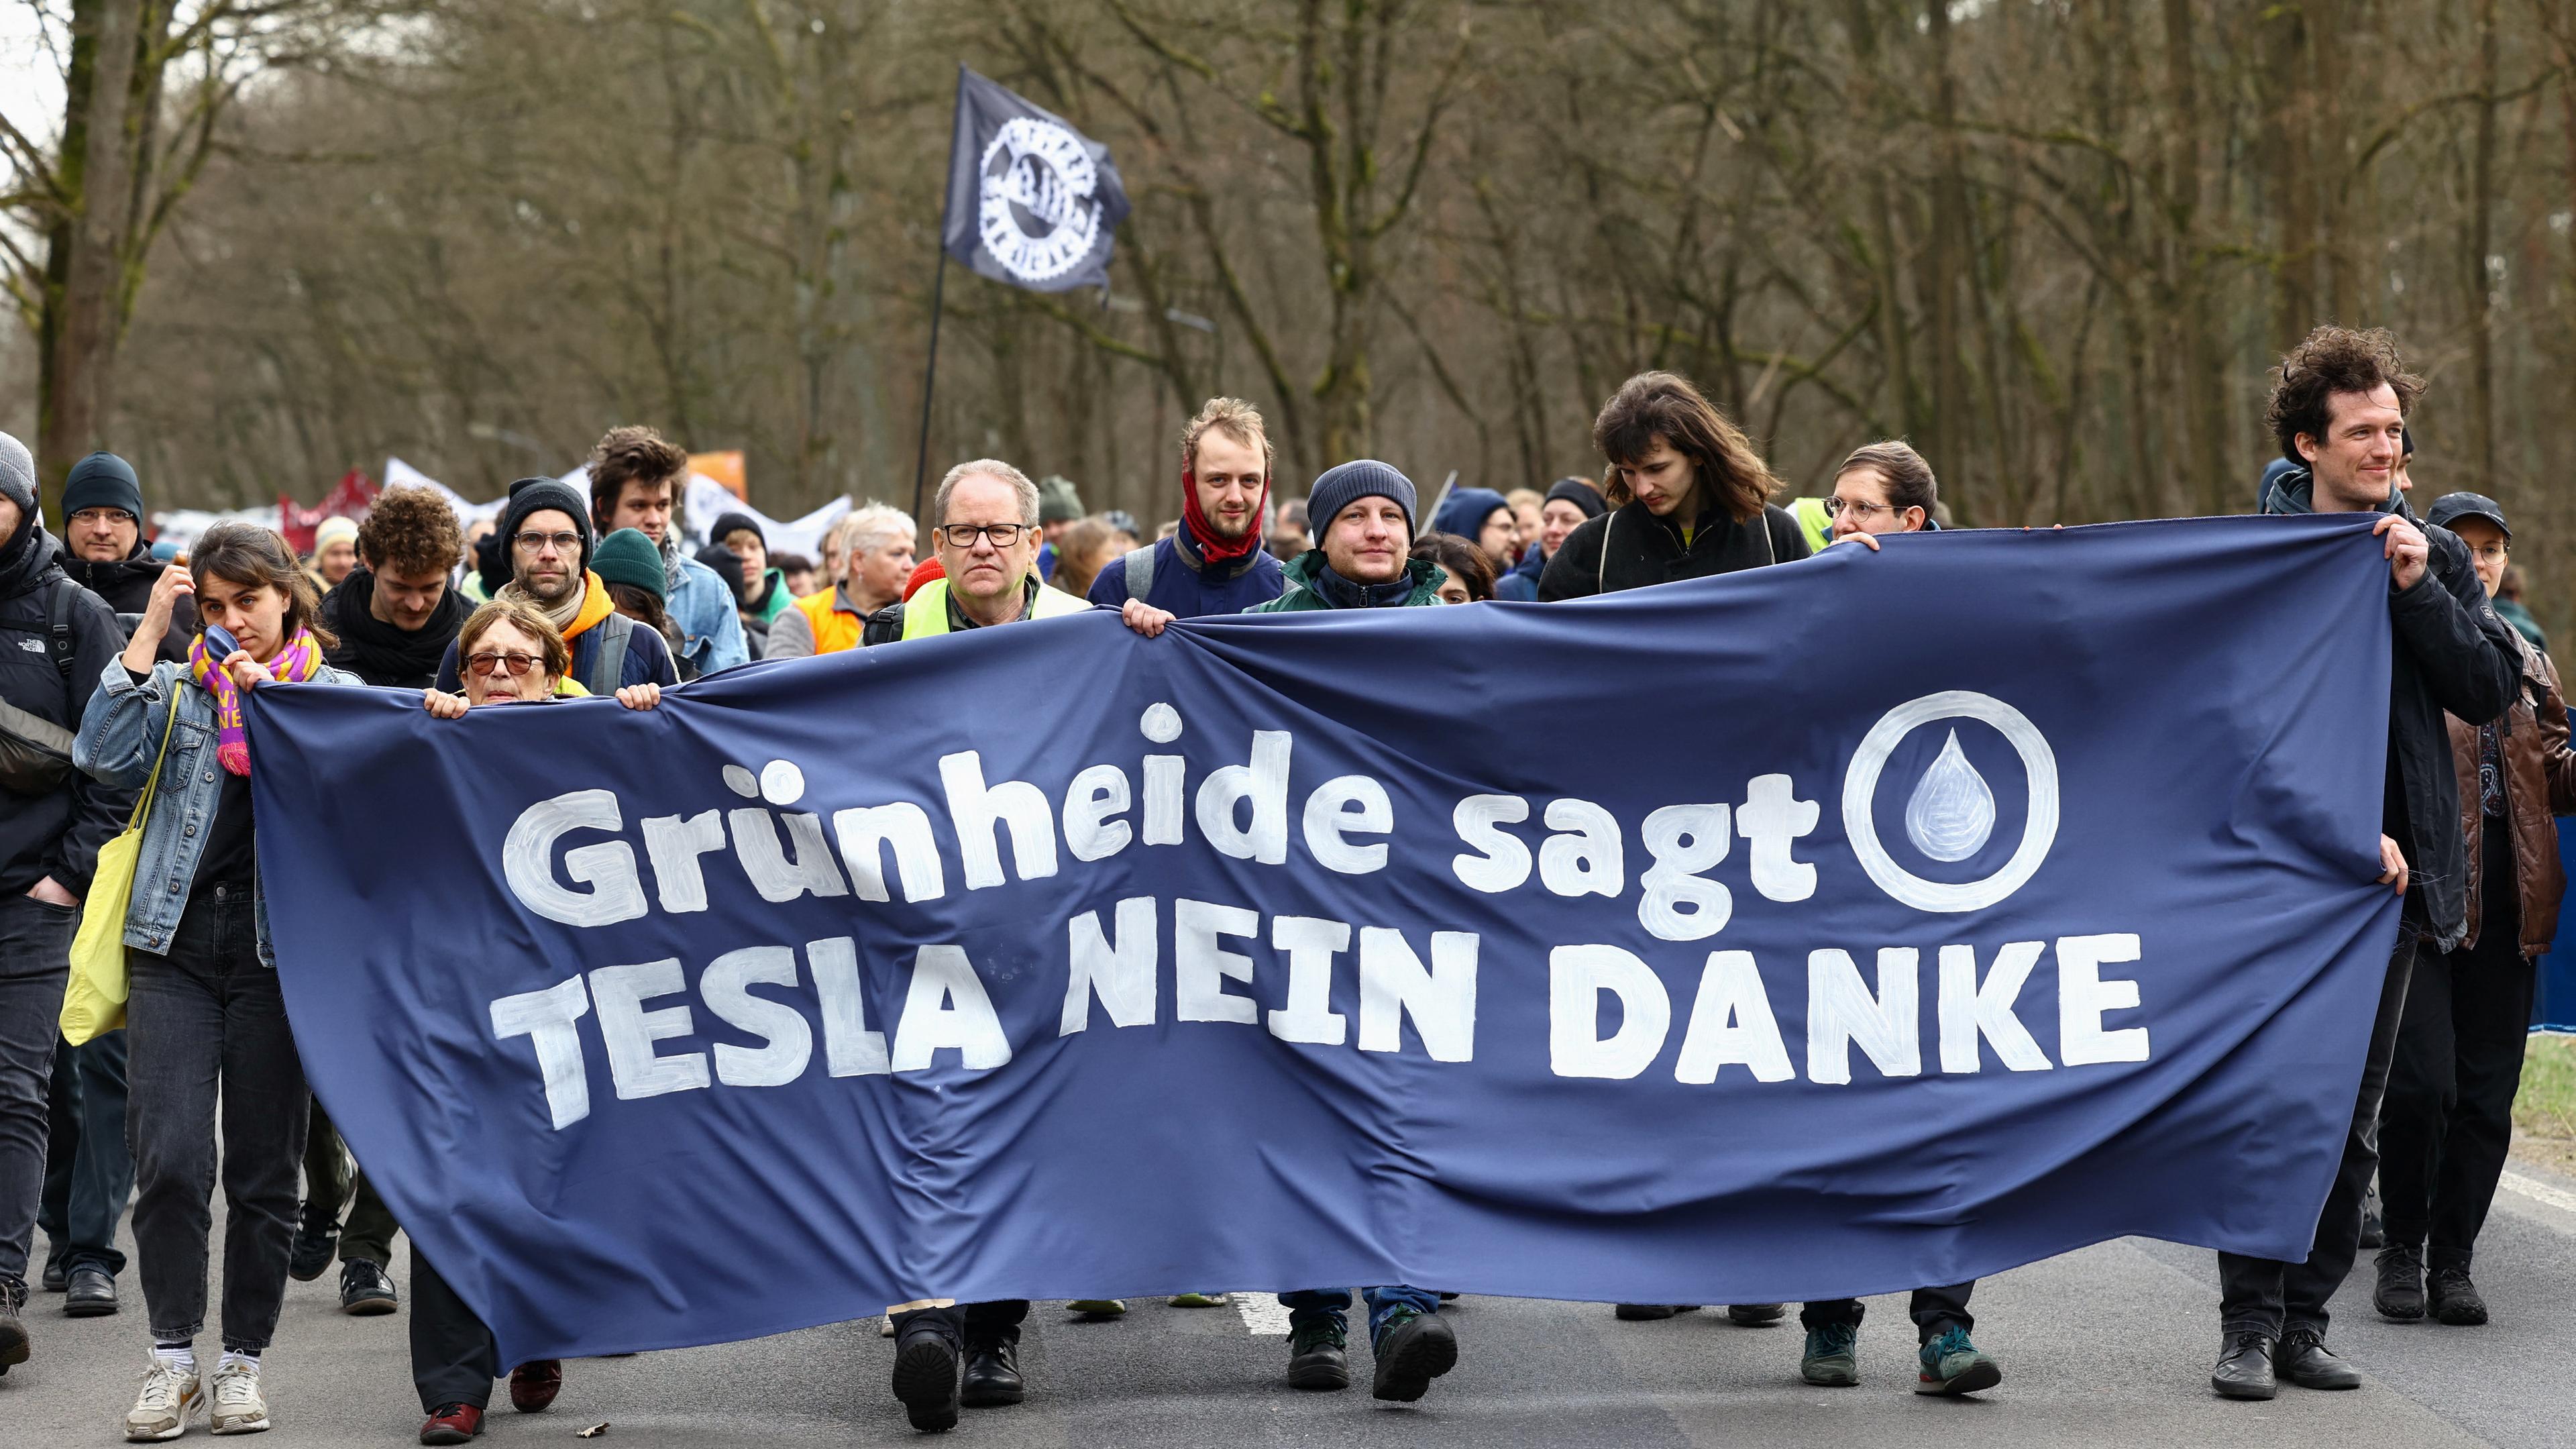 10.03.2024: Umweltaktivisten halten ein Transparent während eines Protestes gegen den Ausbau der sogenannten Tesla Gigafactory in Grünheide bei Berlin. Auf dem Transparent steht: "Grünheide sagt Tesla nein danke".